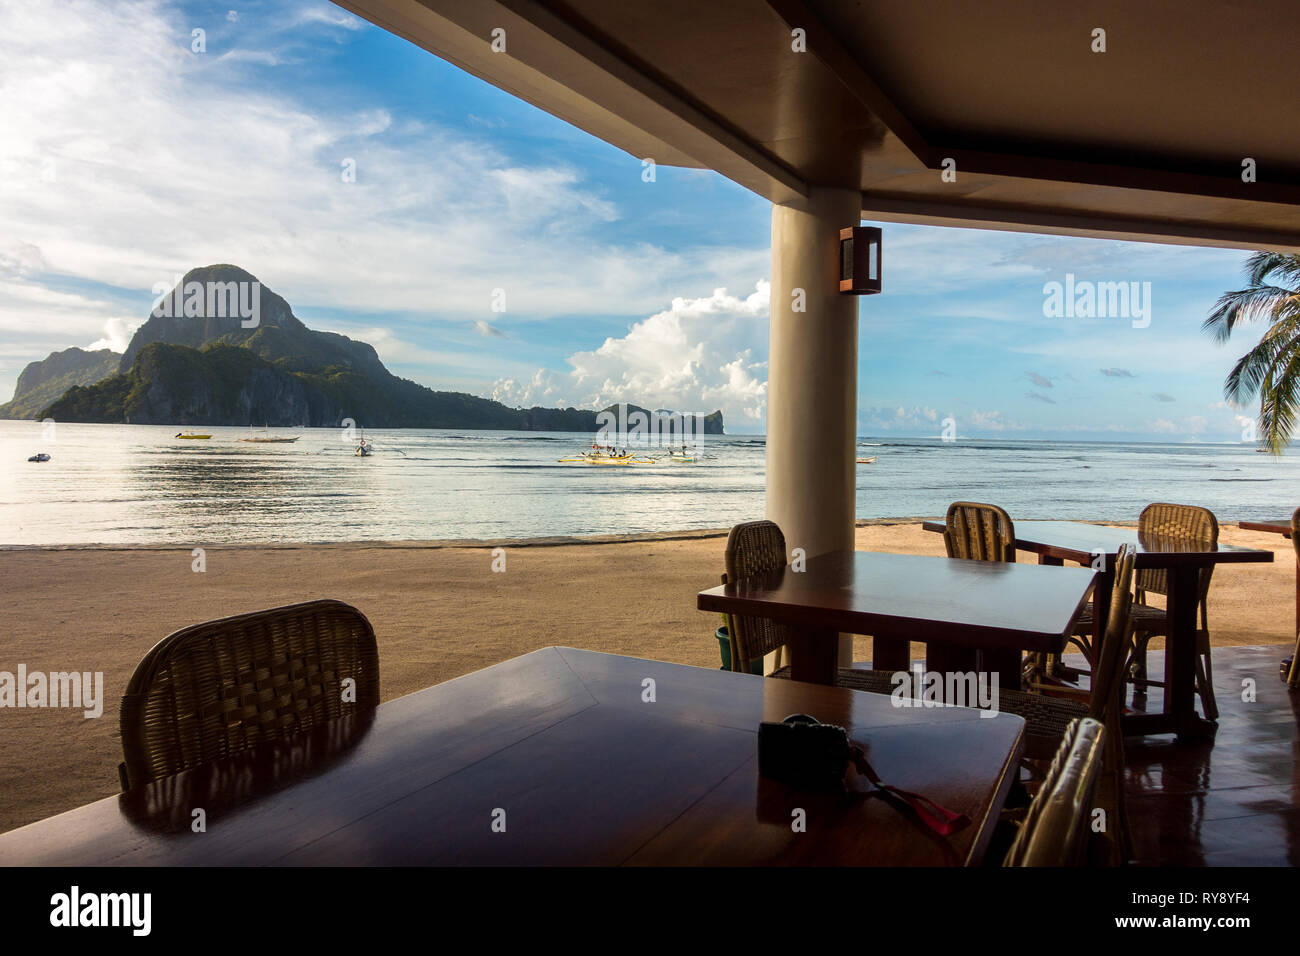 Restaurant Tische und Stühle, mit cadlao Island View - Das Nest Beach Resort, El Nido Palawan - Philippinen Stockfoto